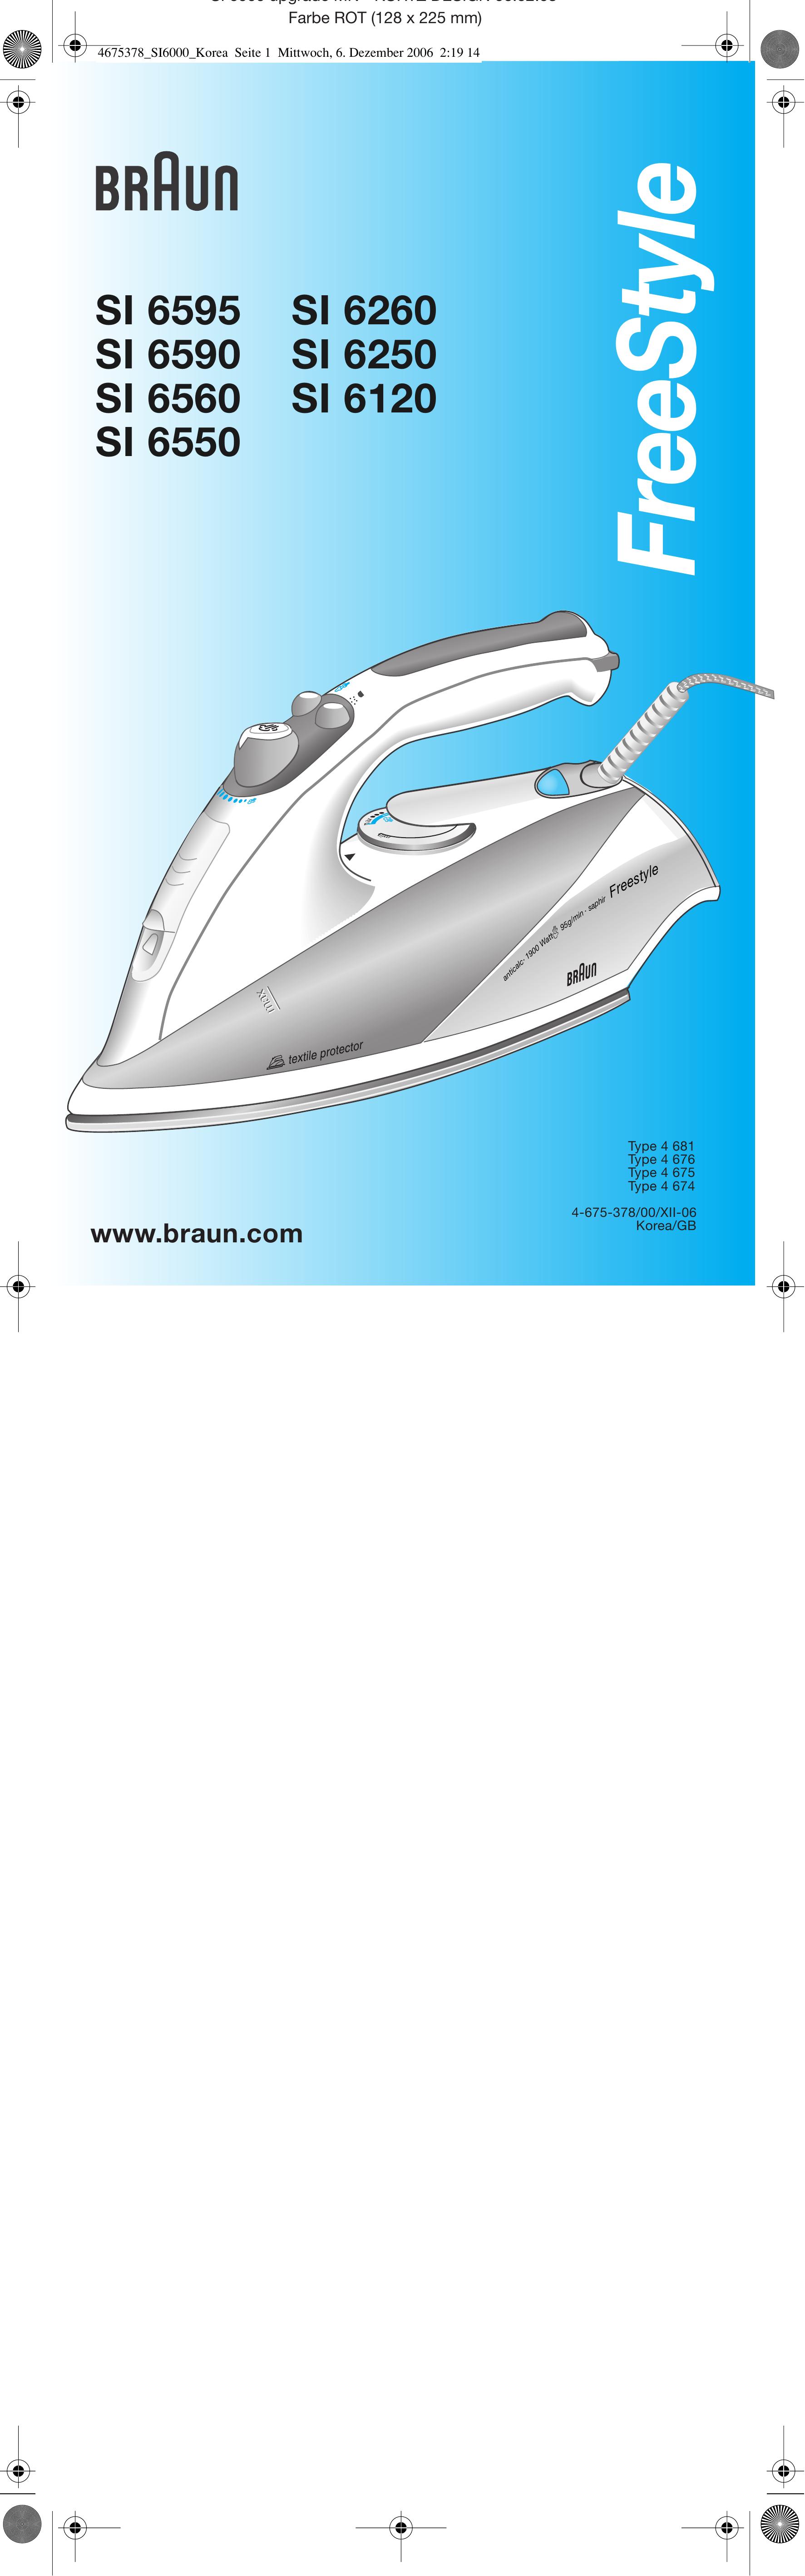 Braun SI 6260 Iron User Manual